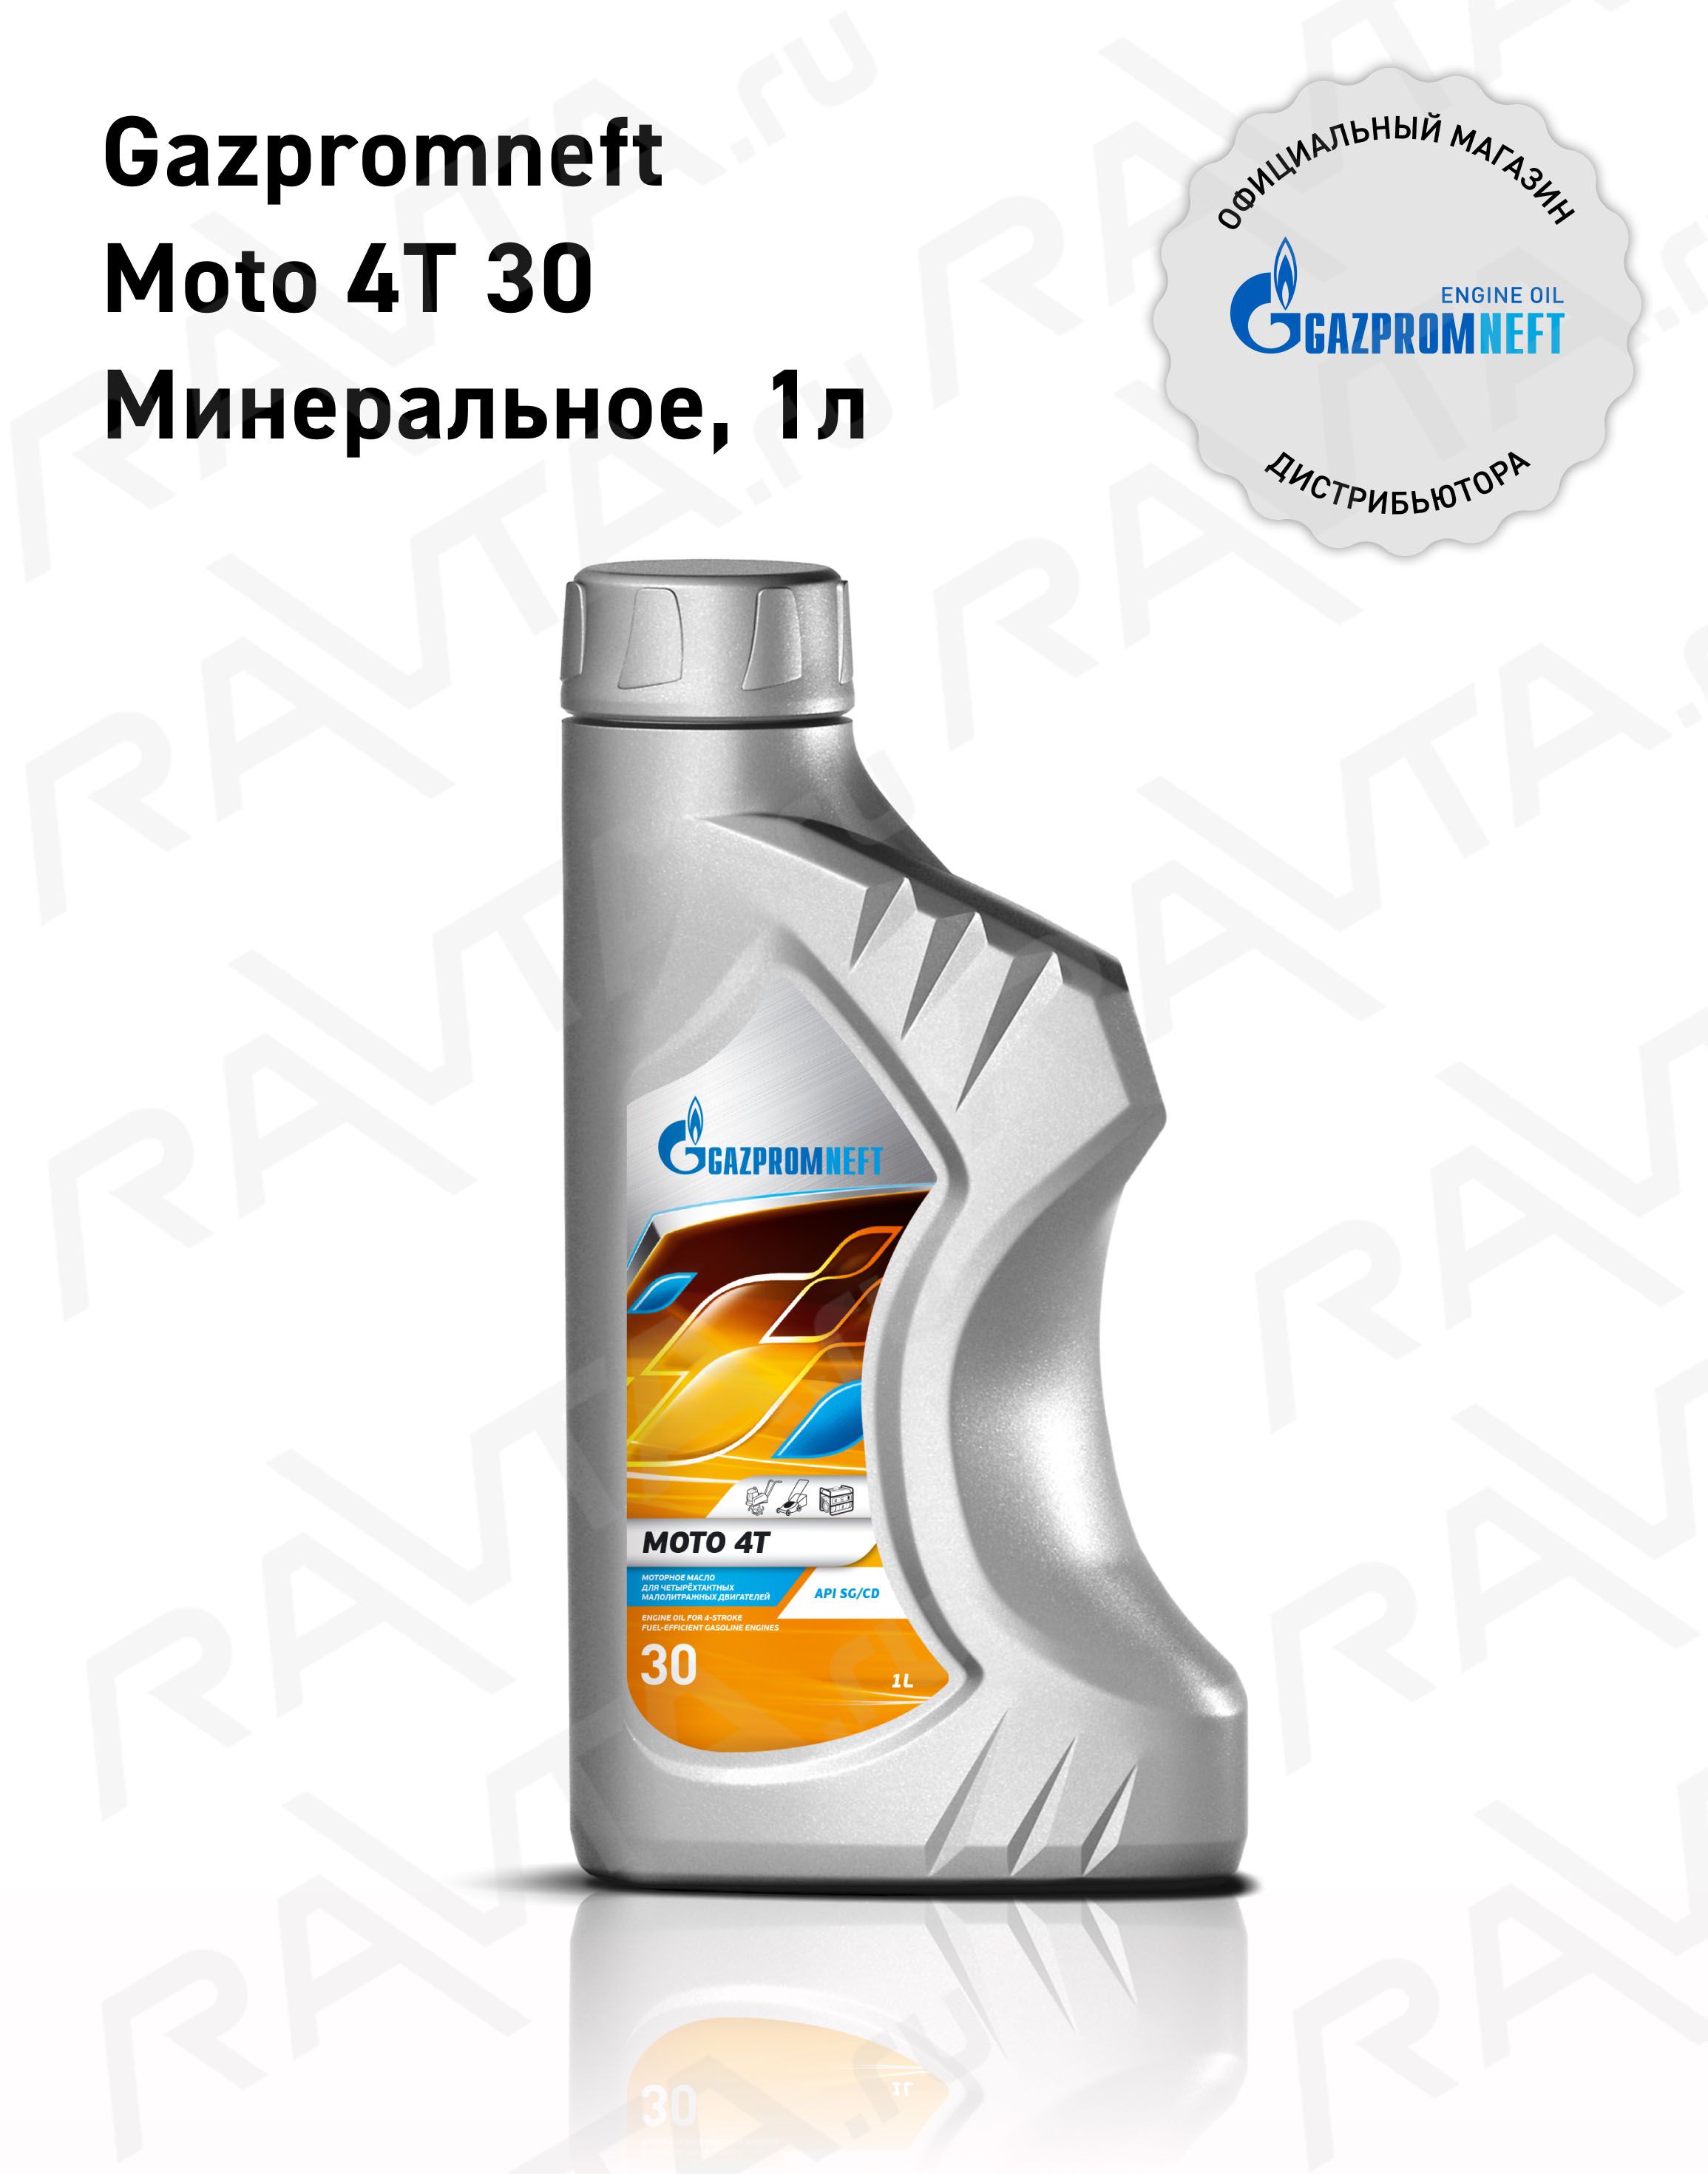 GazpromneftMoto4T30Масломоторное,Минеральное,1л